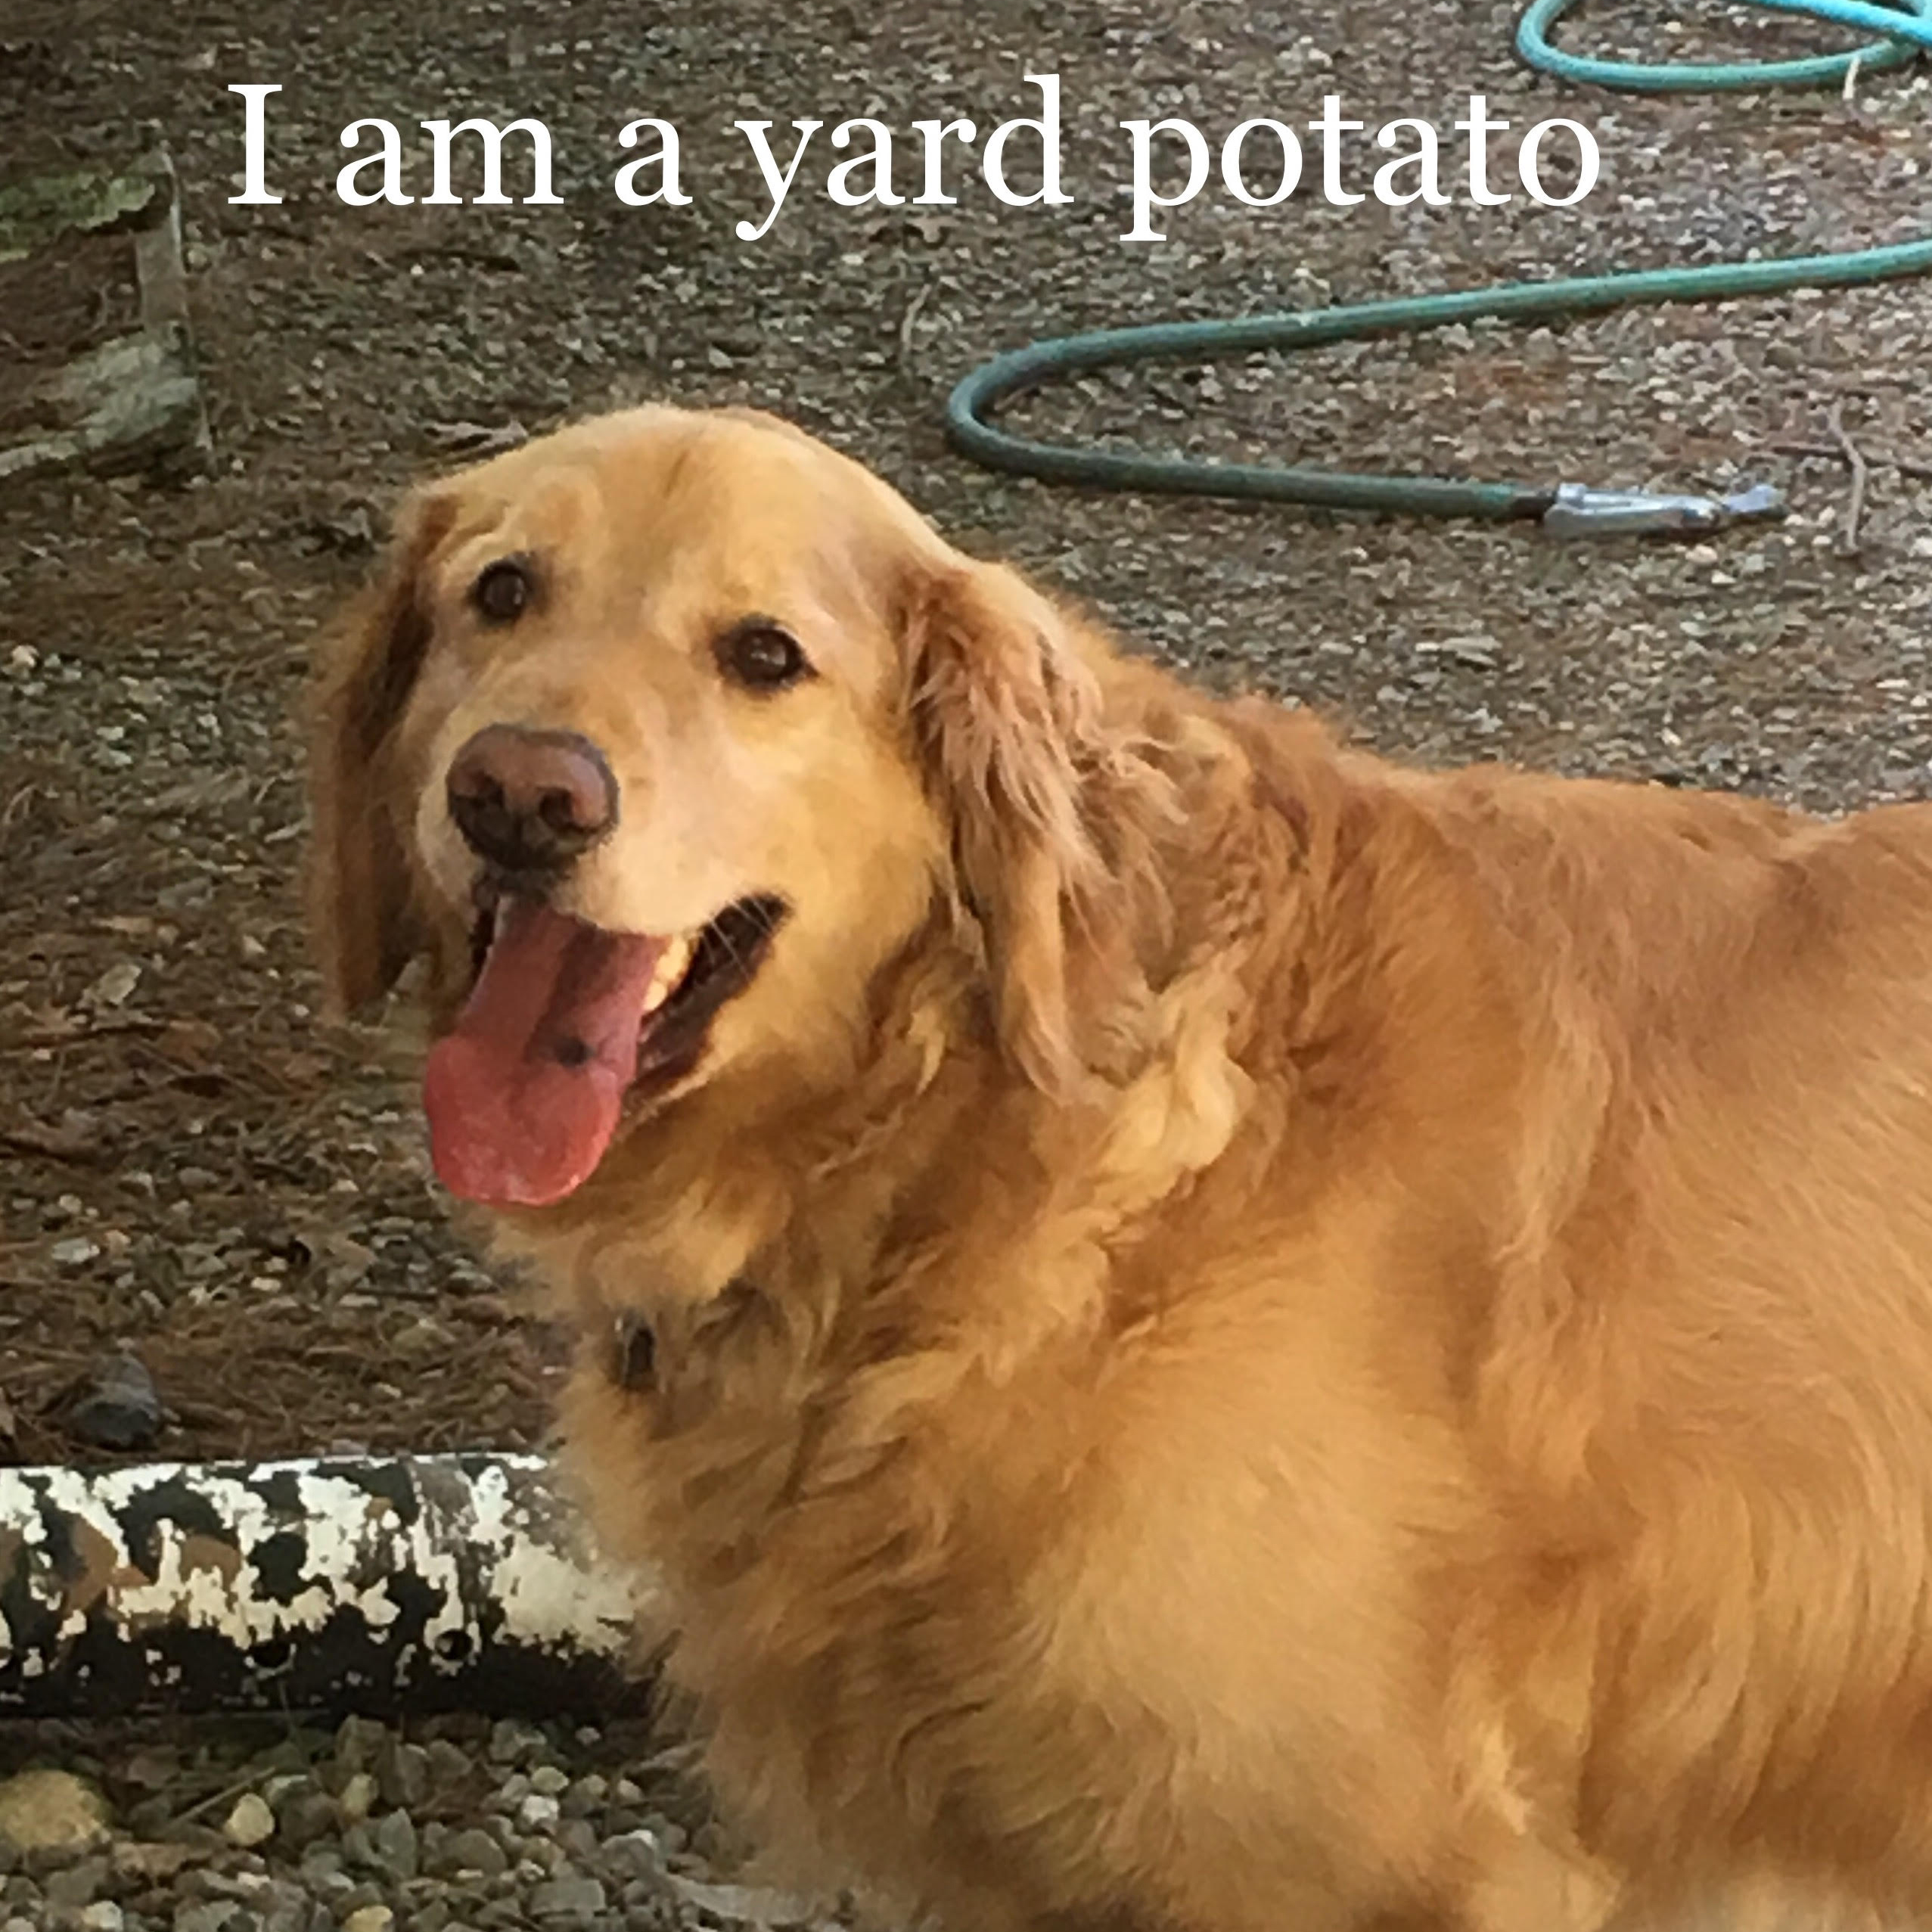 photo of golden retriever with caption "I am a yard potato"